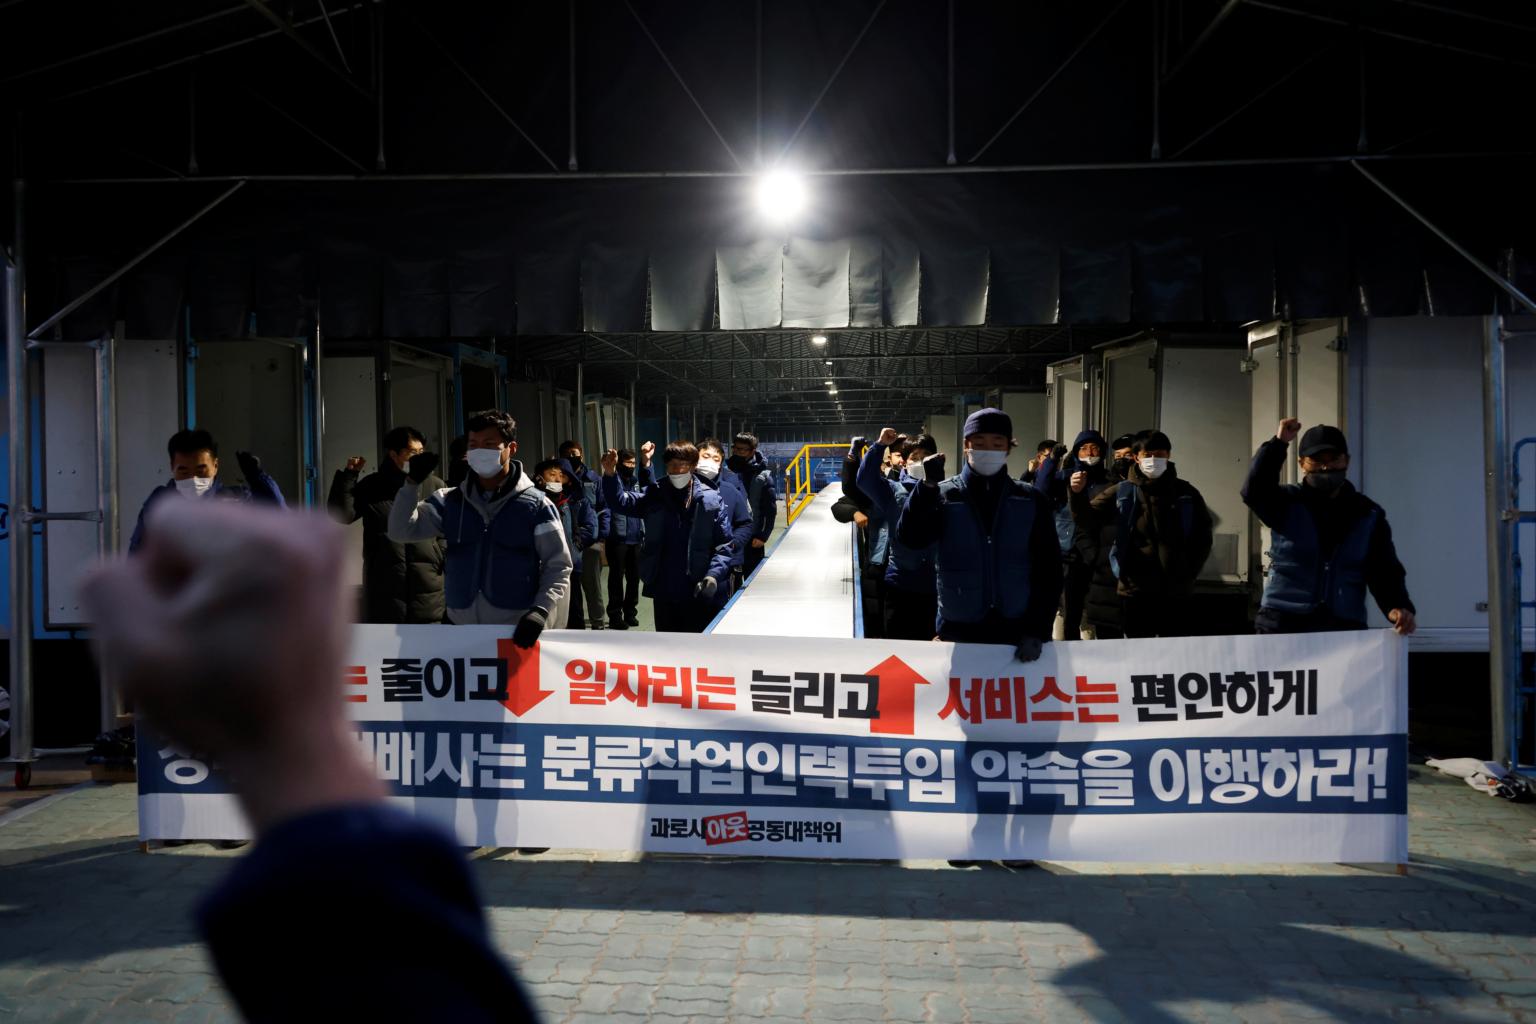 Thảm cảnh những nhân viên giao hàng Hàn Quốc: Bán mạng vì miếng ăn thời đại dịch - Ảnh 2.